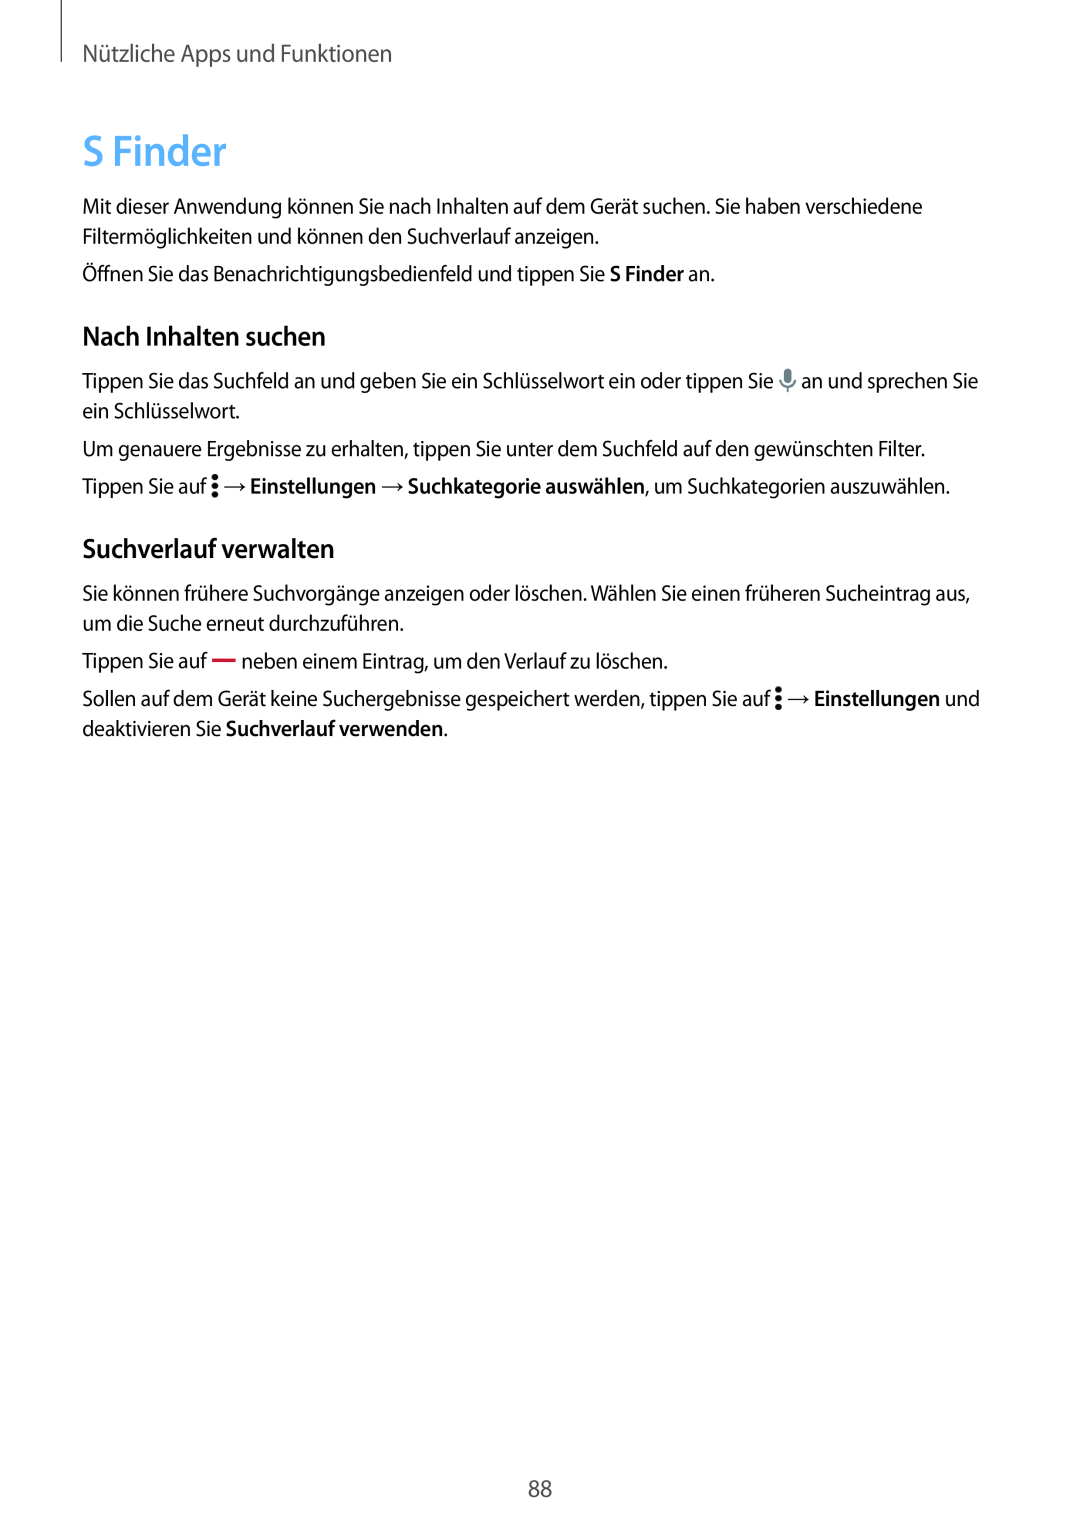 Samsung SM-T800NTSATUR manual S Finder, Nach Inhalten suchen, Suchverlauf verwalten, Nützliche Apps und Funktionen 